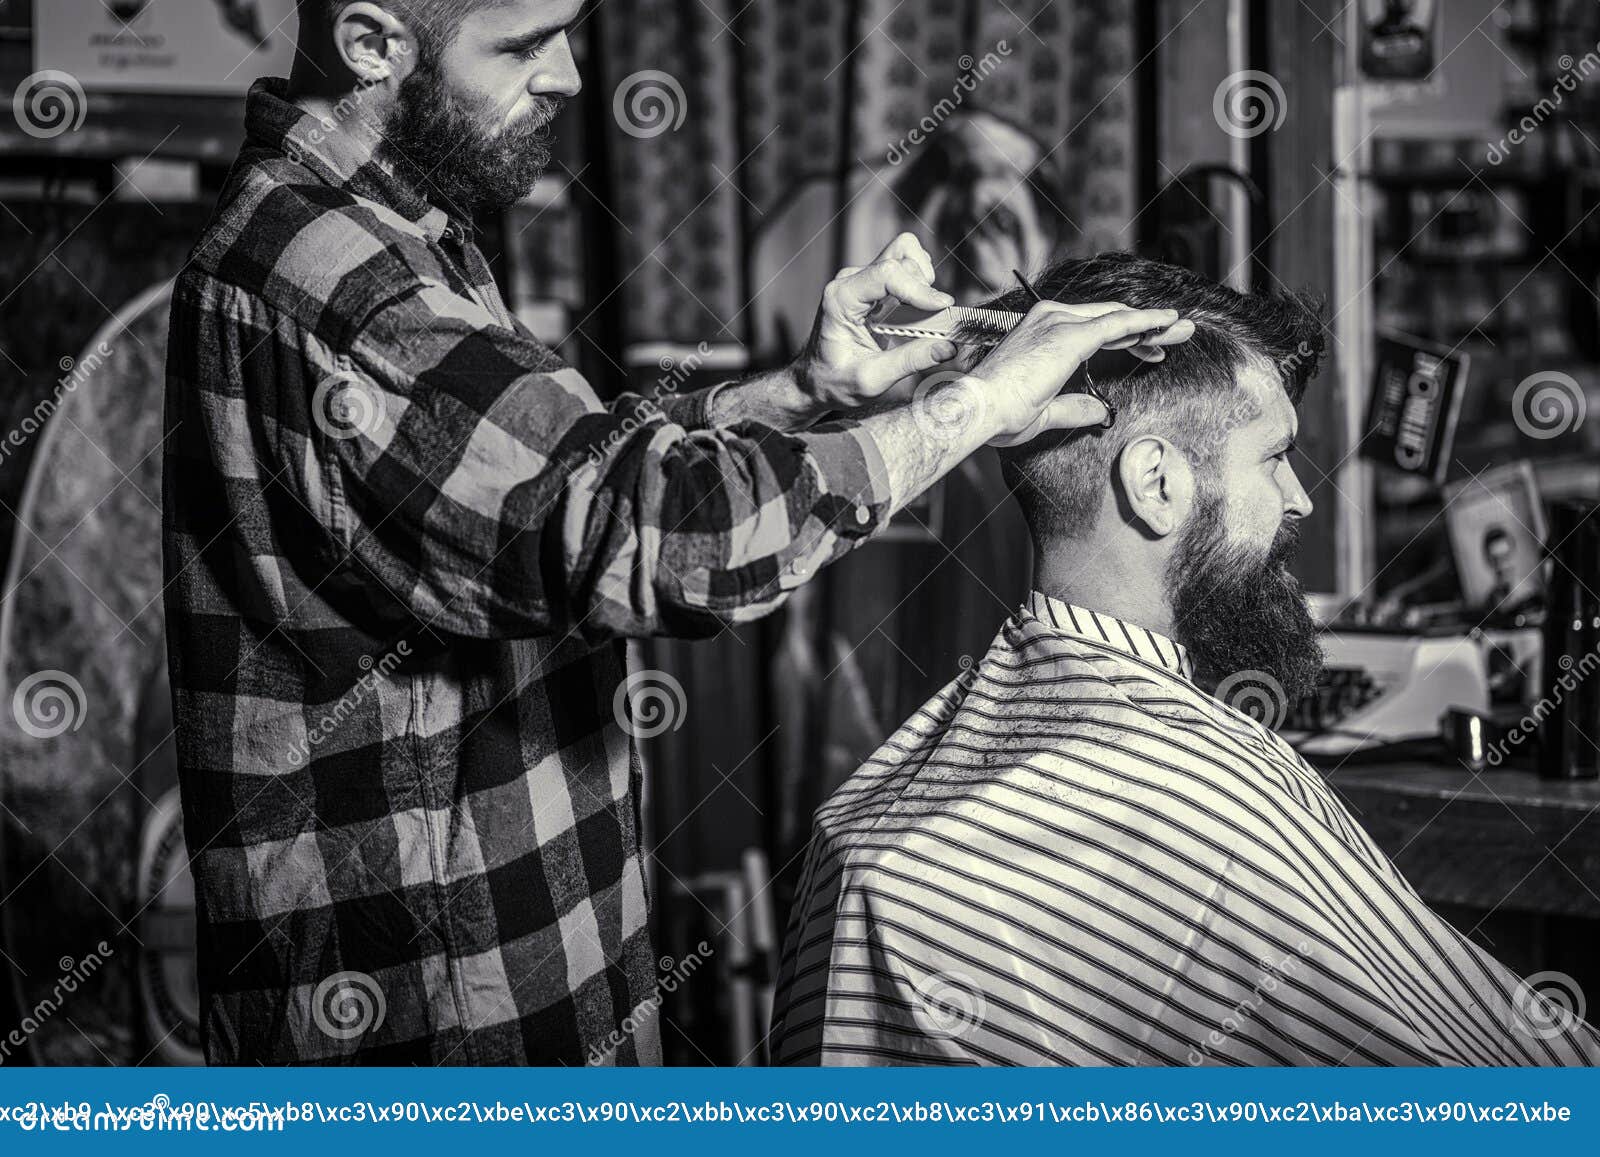 https://thumbs.dreamstime.com/z/hombre-visitando-peluquero-en-barber%C3%ADa-tijeras-de-barbero-blanco-y-negro-barbudo-peluquer%C3%ADa-212258604.jpg